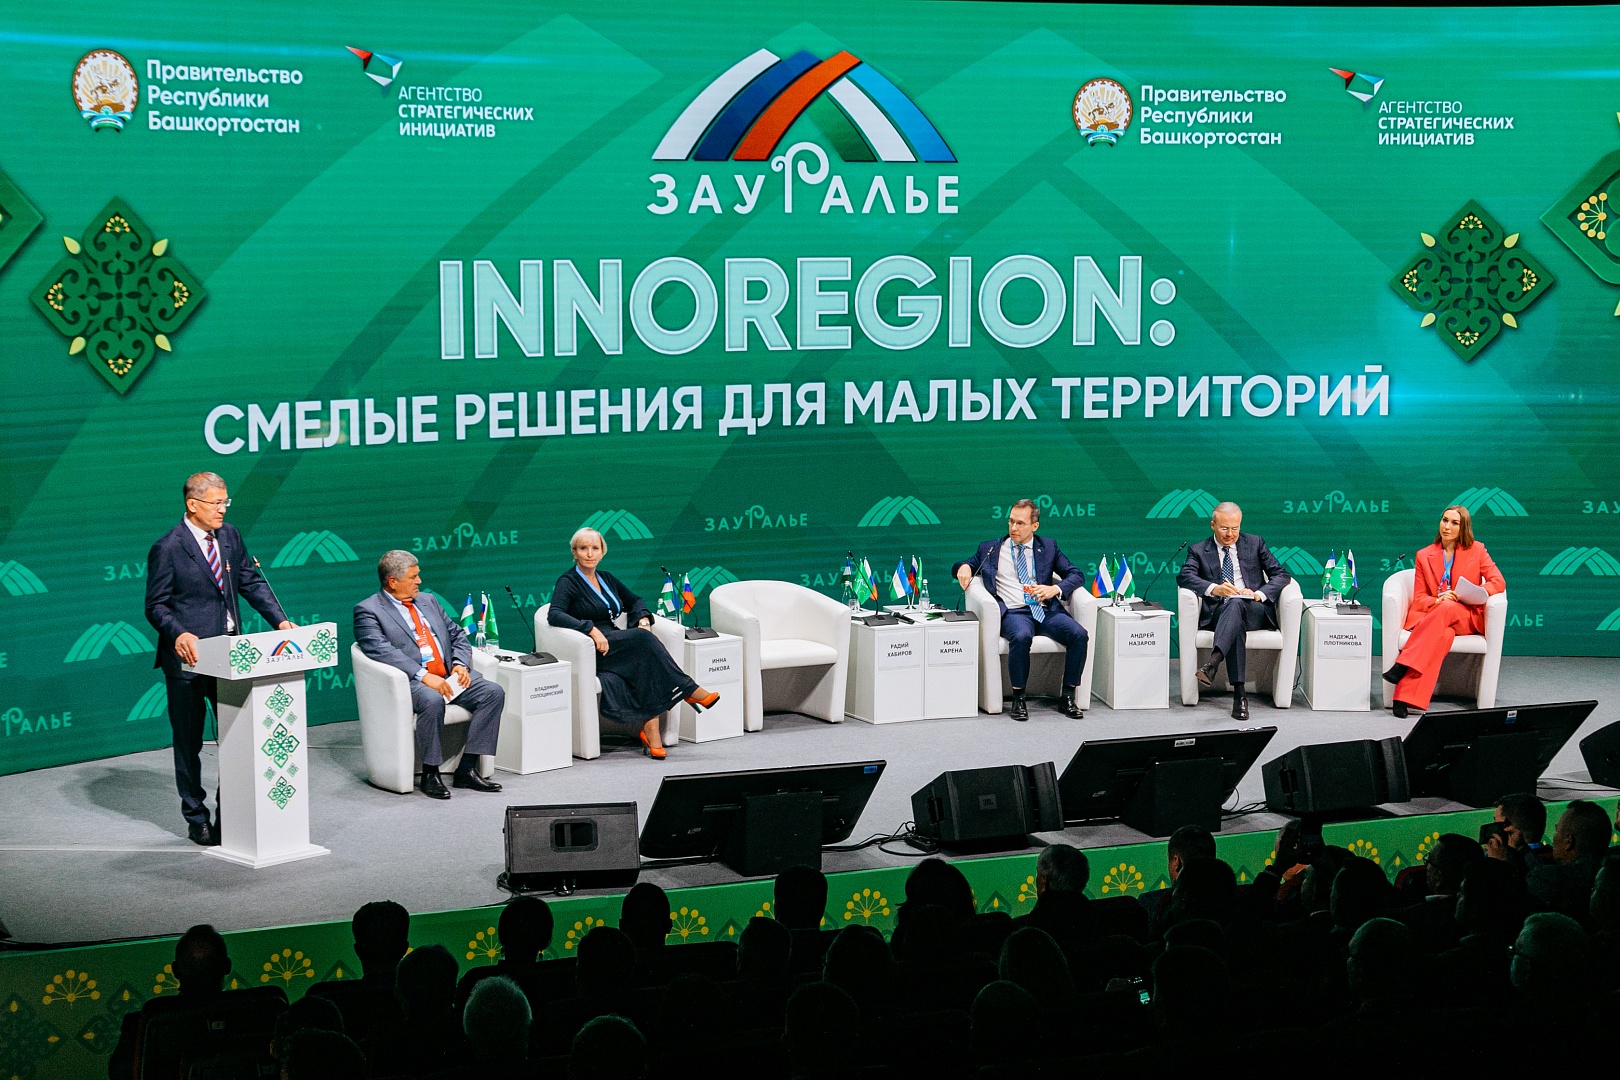 Пленарное заседание «Innoregion: смелые решения для малых территорий»